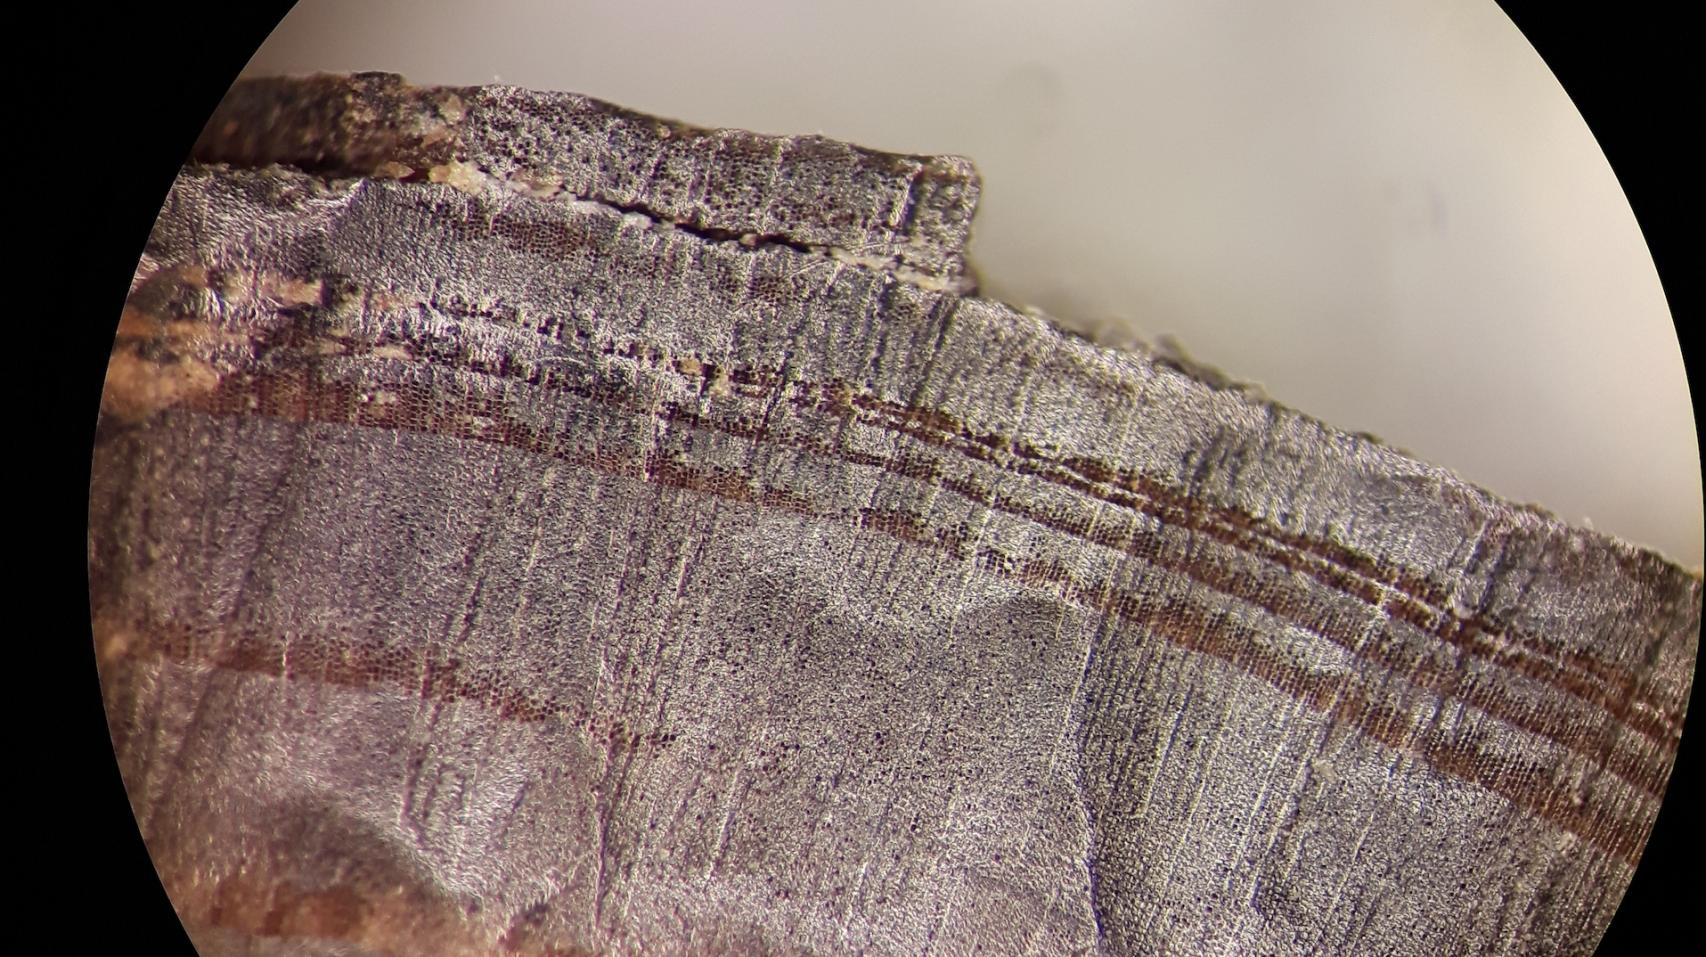 Imagen microscópica de uno de los fragmentos de madera analziados.